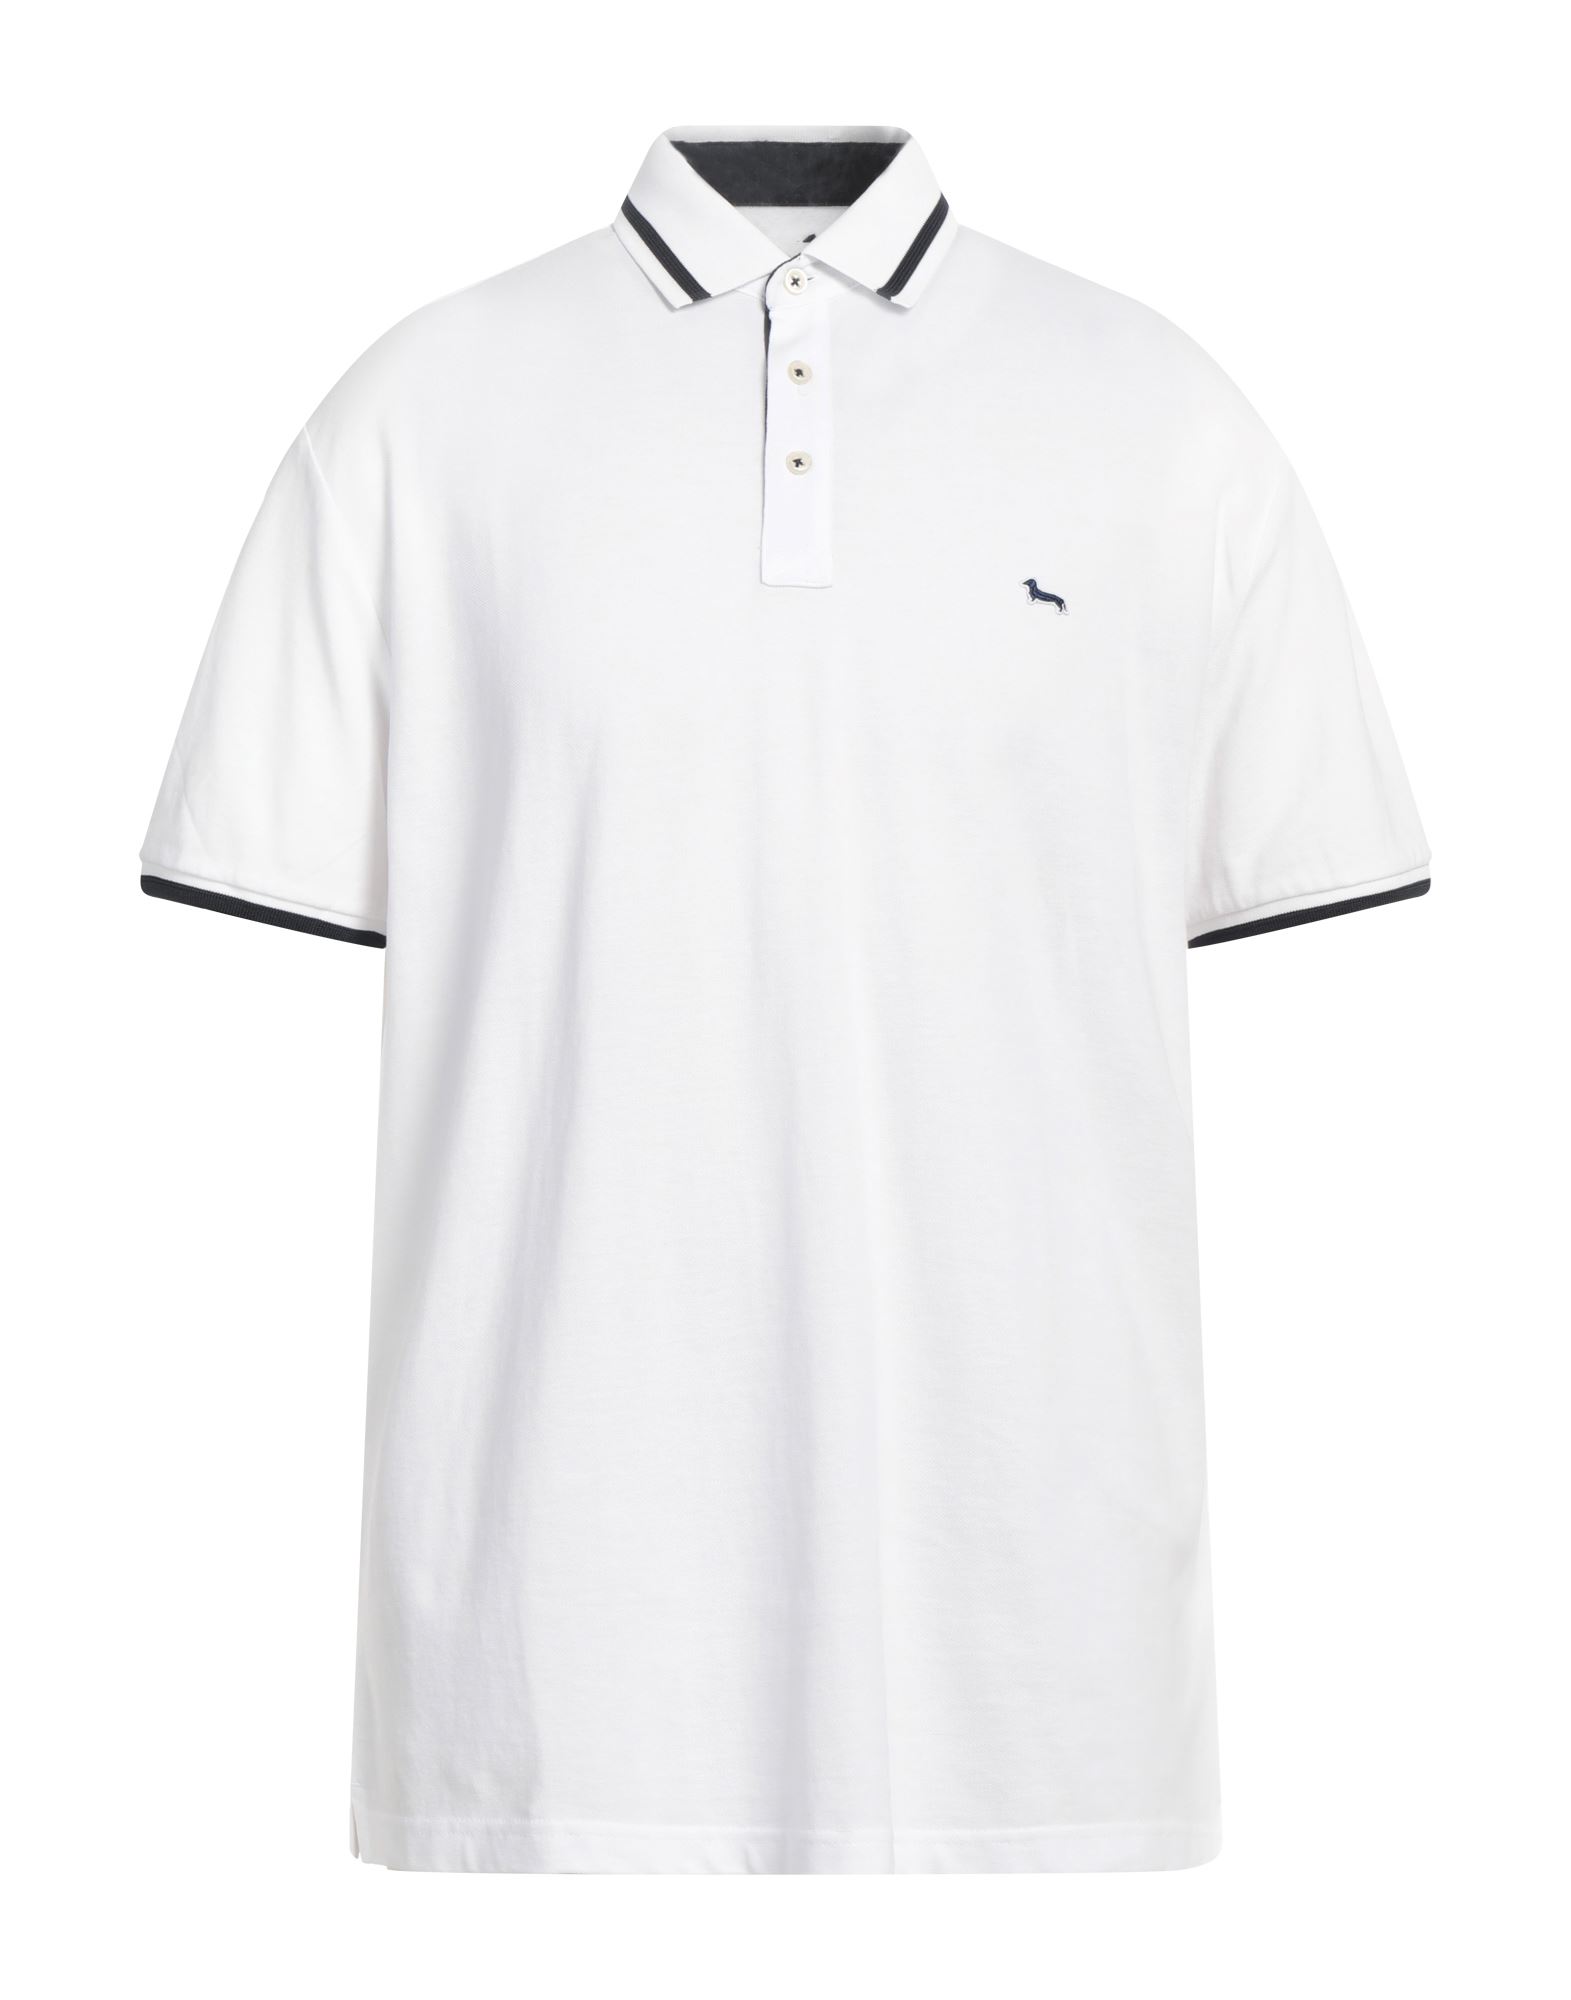 Harmont & Blaine Man Polo Shirt White Size Xxl Cotton